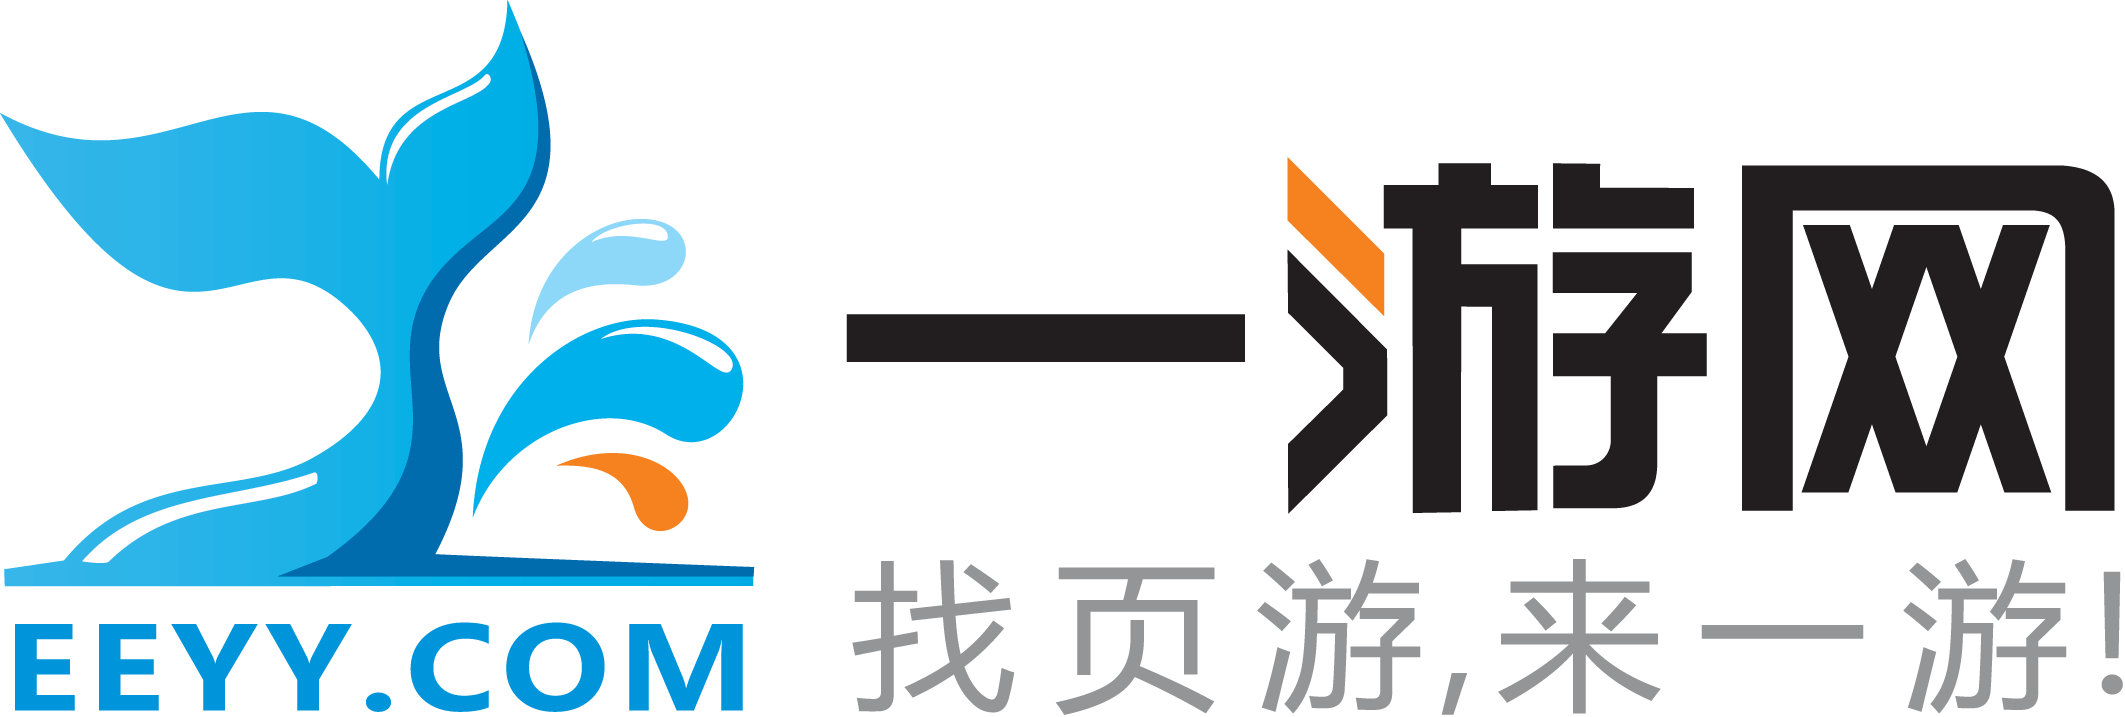 一游網logo